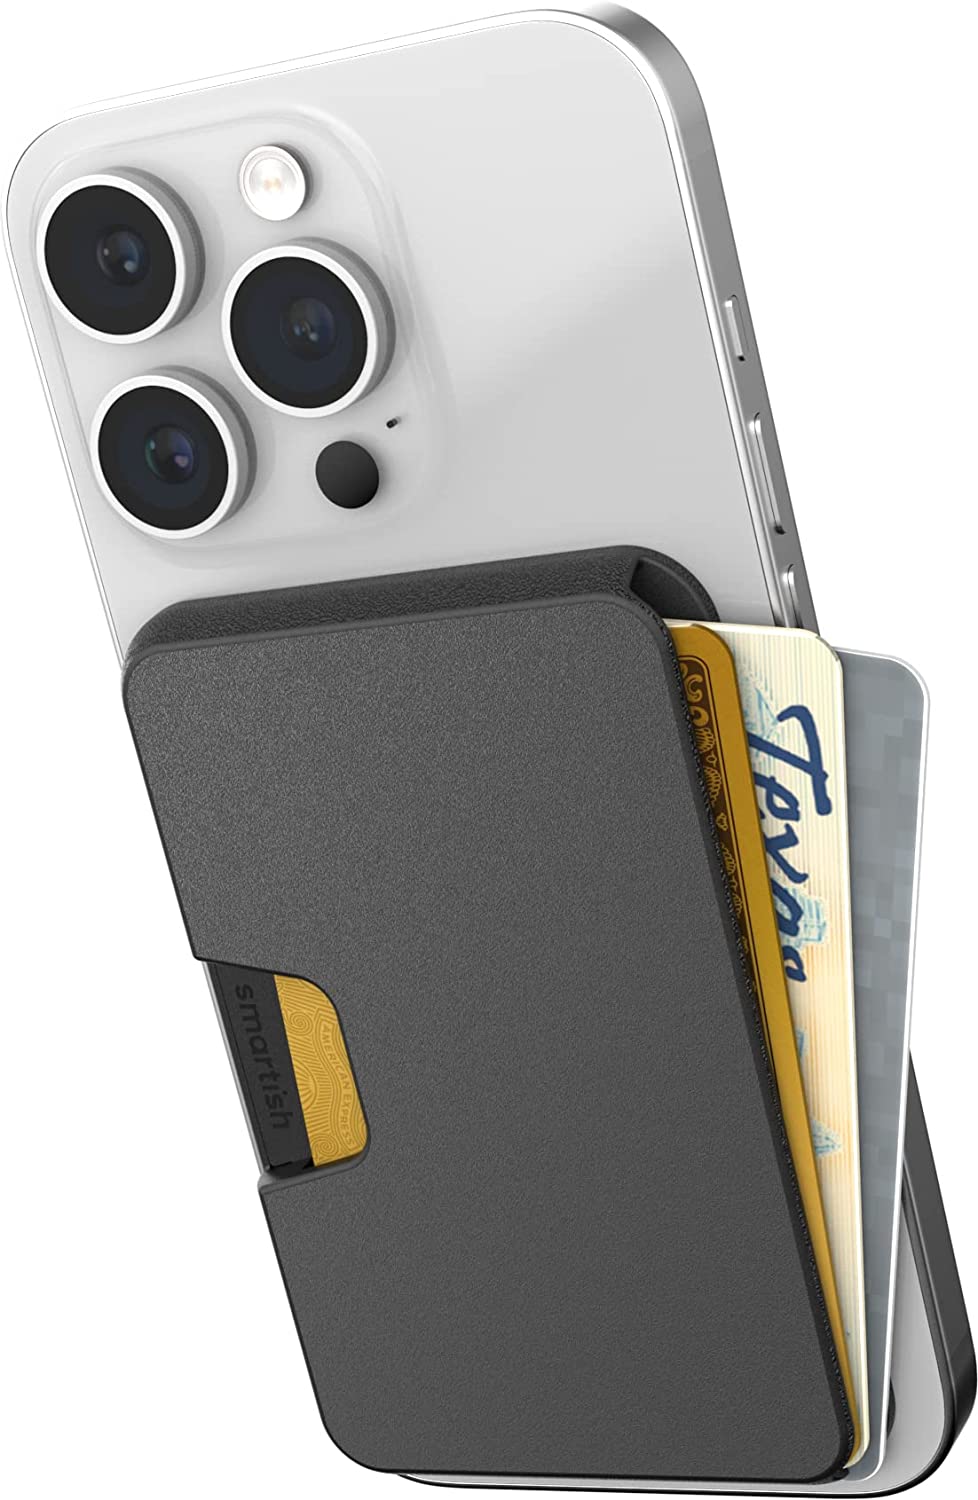 マグセーフ カード ウォレット 財布 カード3枚収納 MagSafe ブラック iPhone 12/13/14 シリーズ対応 ケース カバー カードポケット 送料無料